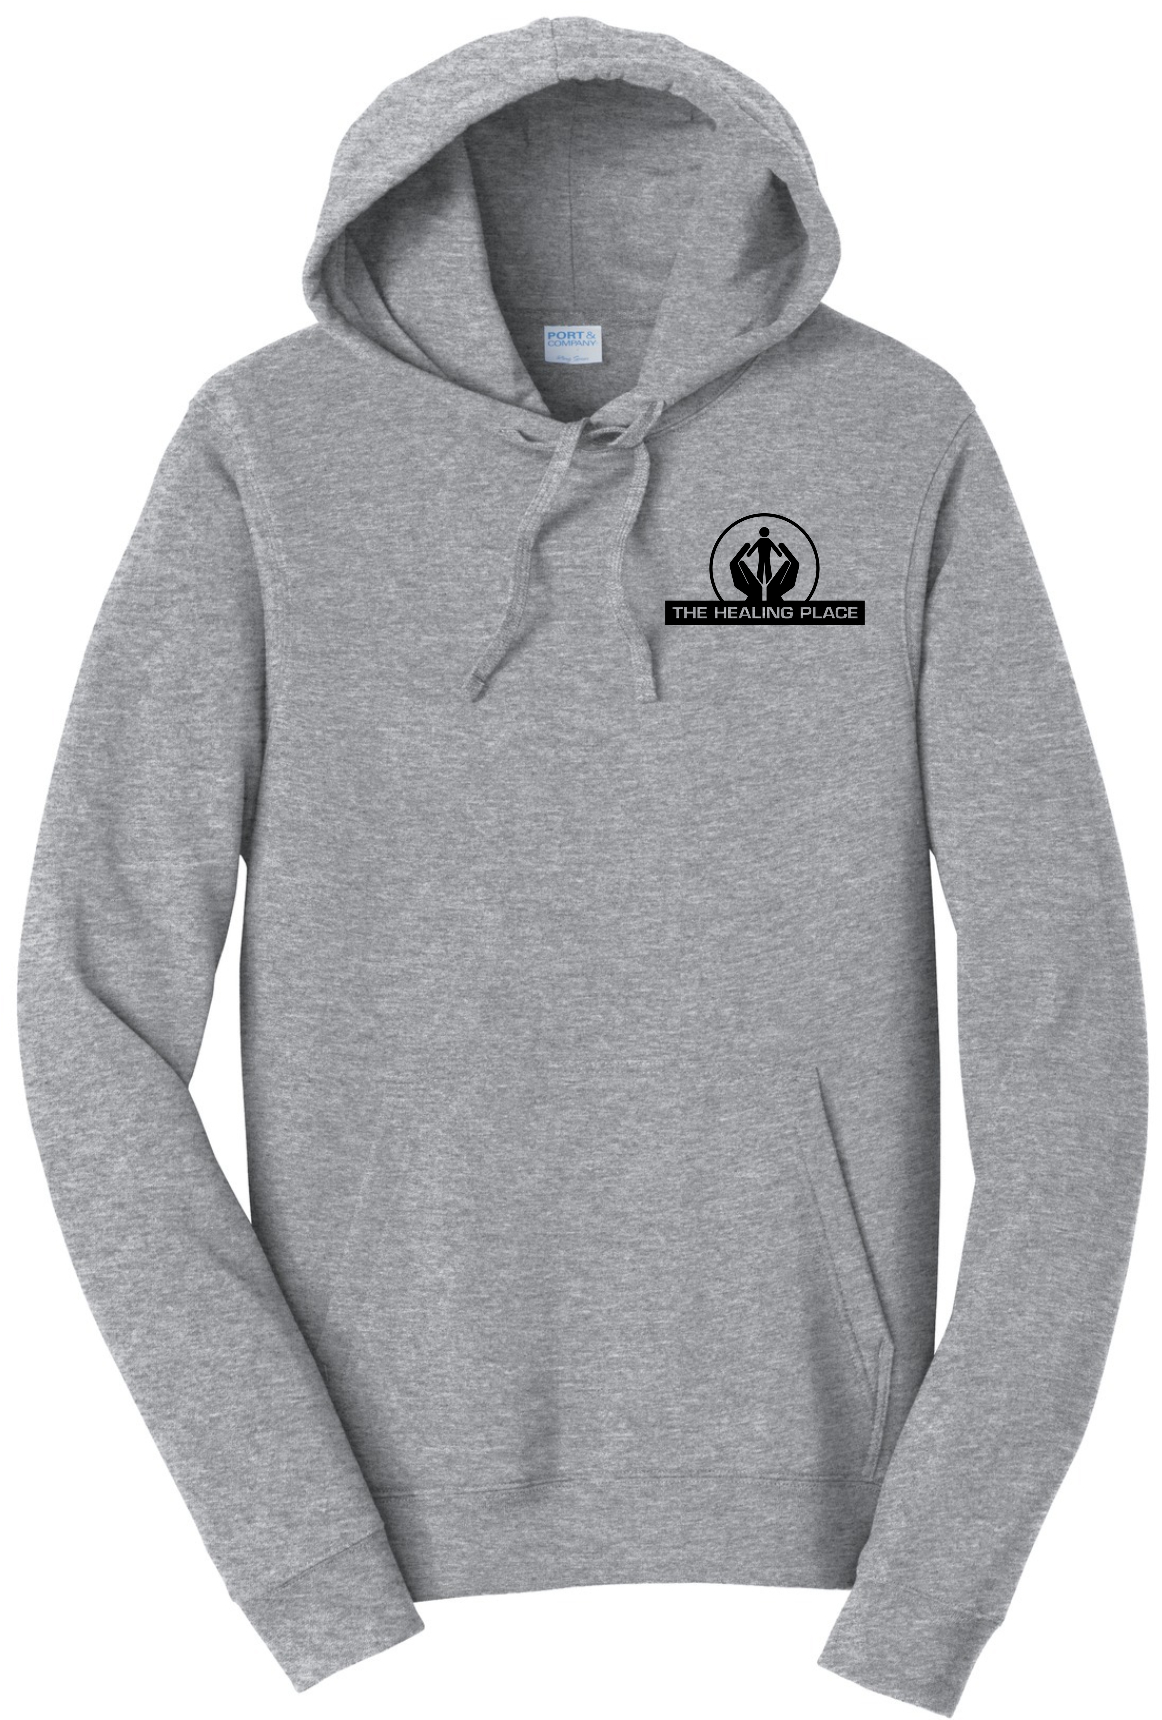 Port & Company® Fan Favorite™ Fleece Pullover Hooded Sweatshirt PC850H (Black Logo)